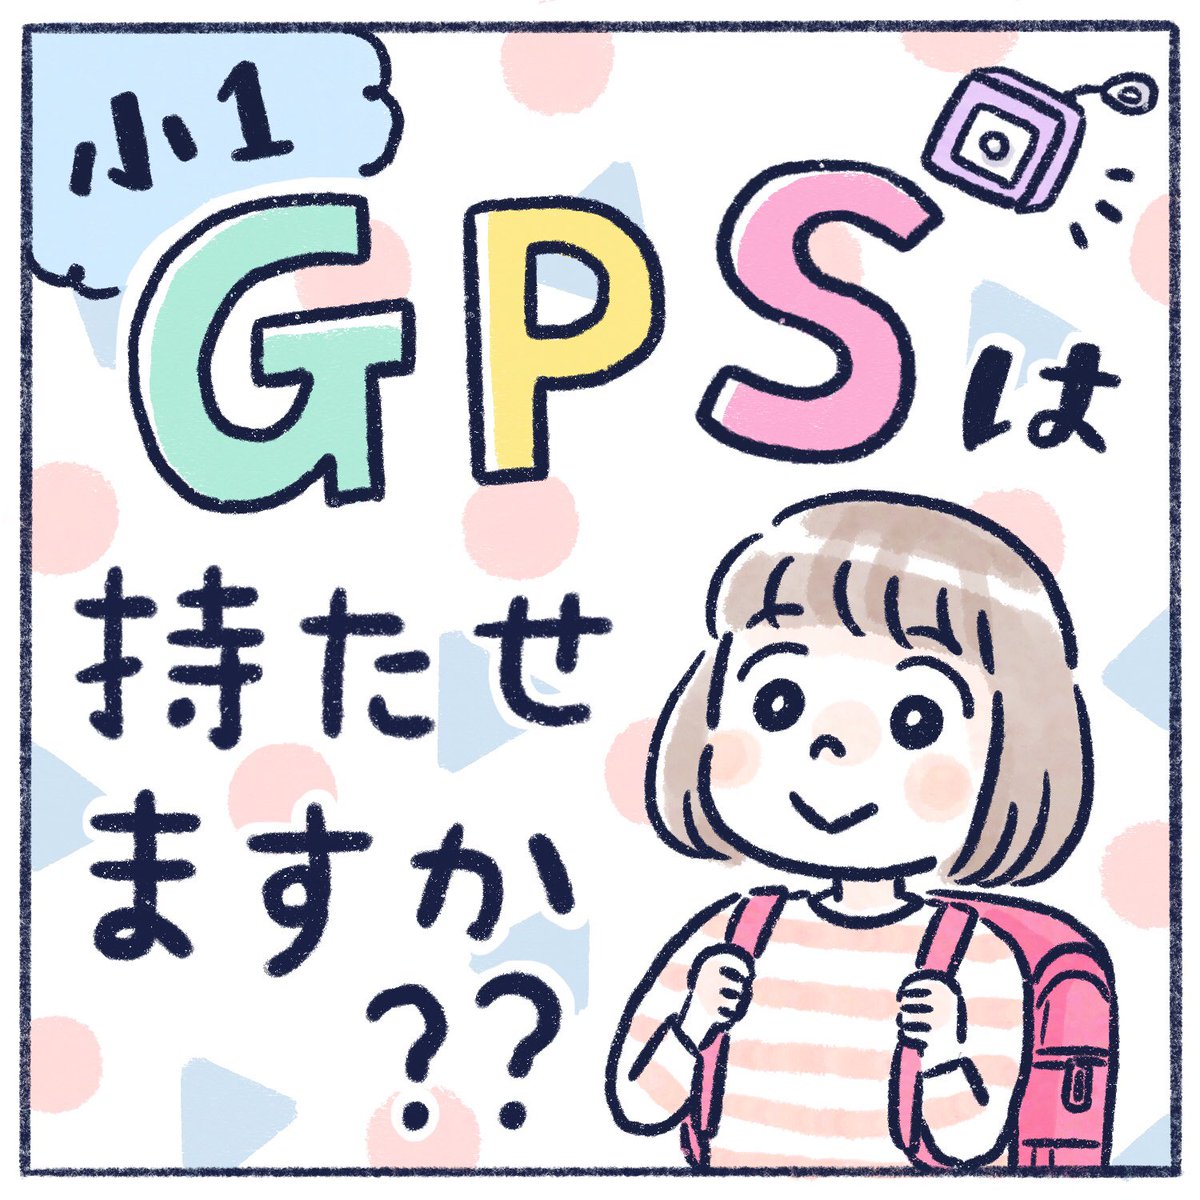 GPSいらないかなぁと思ってたのですが、結局持たせたお話!

#育児漫画 #エッセイ漫画 #漫画が読めるハッシュタグ #さっちととっくん #GPS 